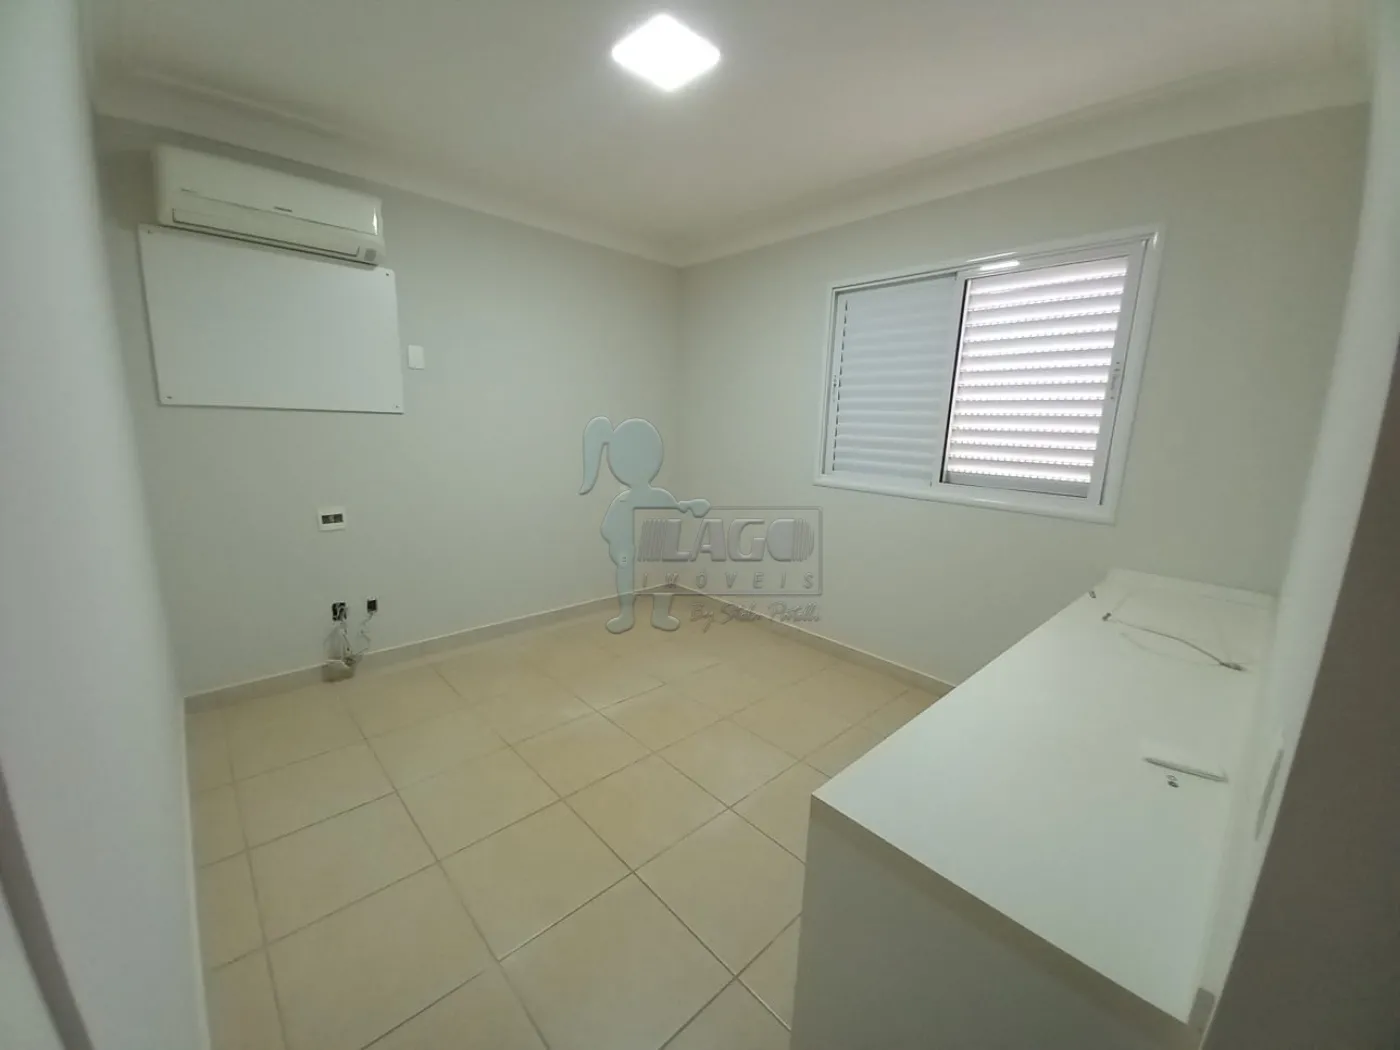 Comprar Apartamento / Padrão em Ribeirão Preto R$ 950.000,00 - Foto 17